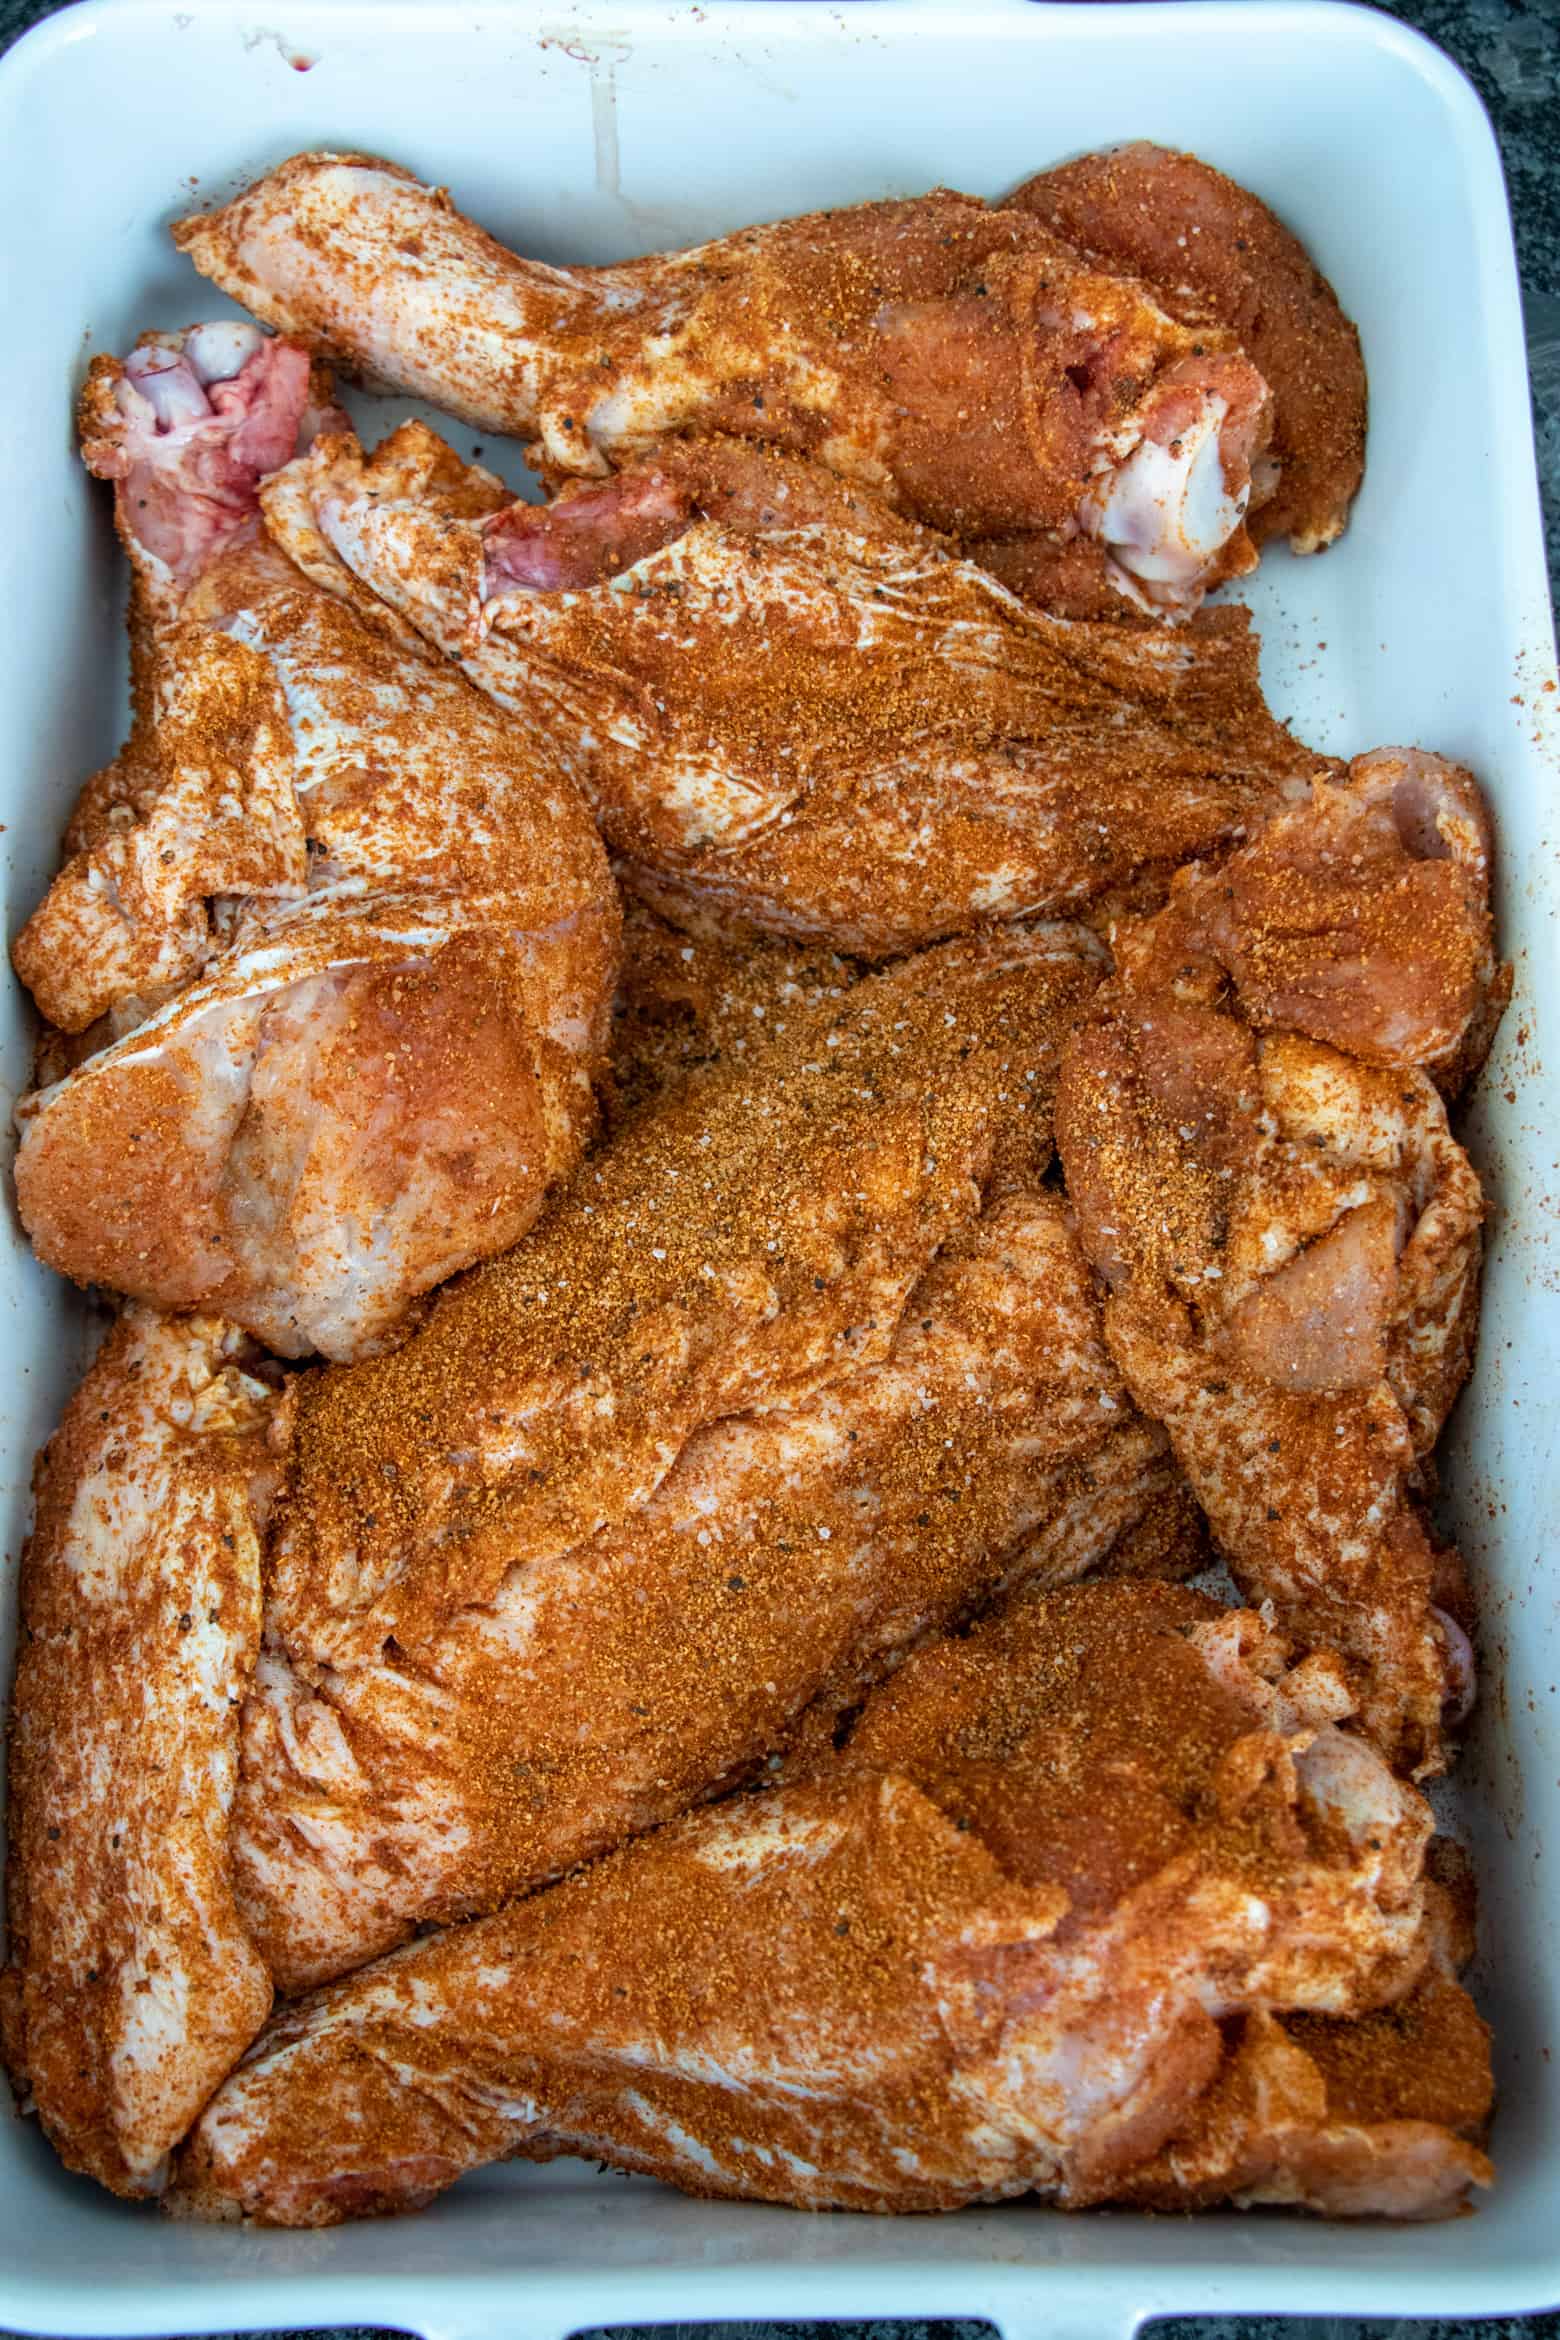 Seasoned turkey wings in a baking pan.